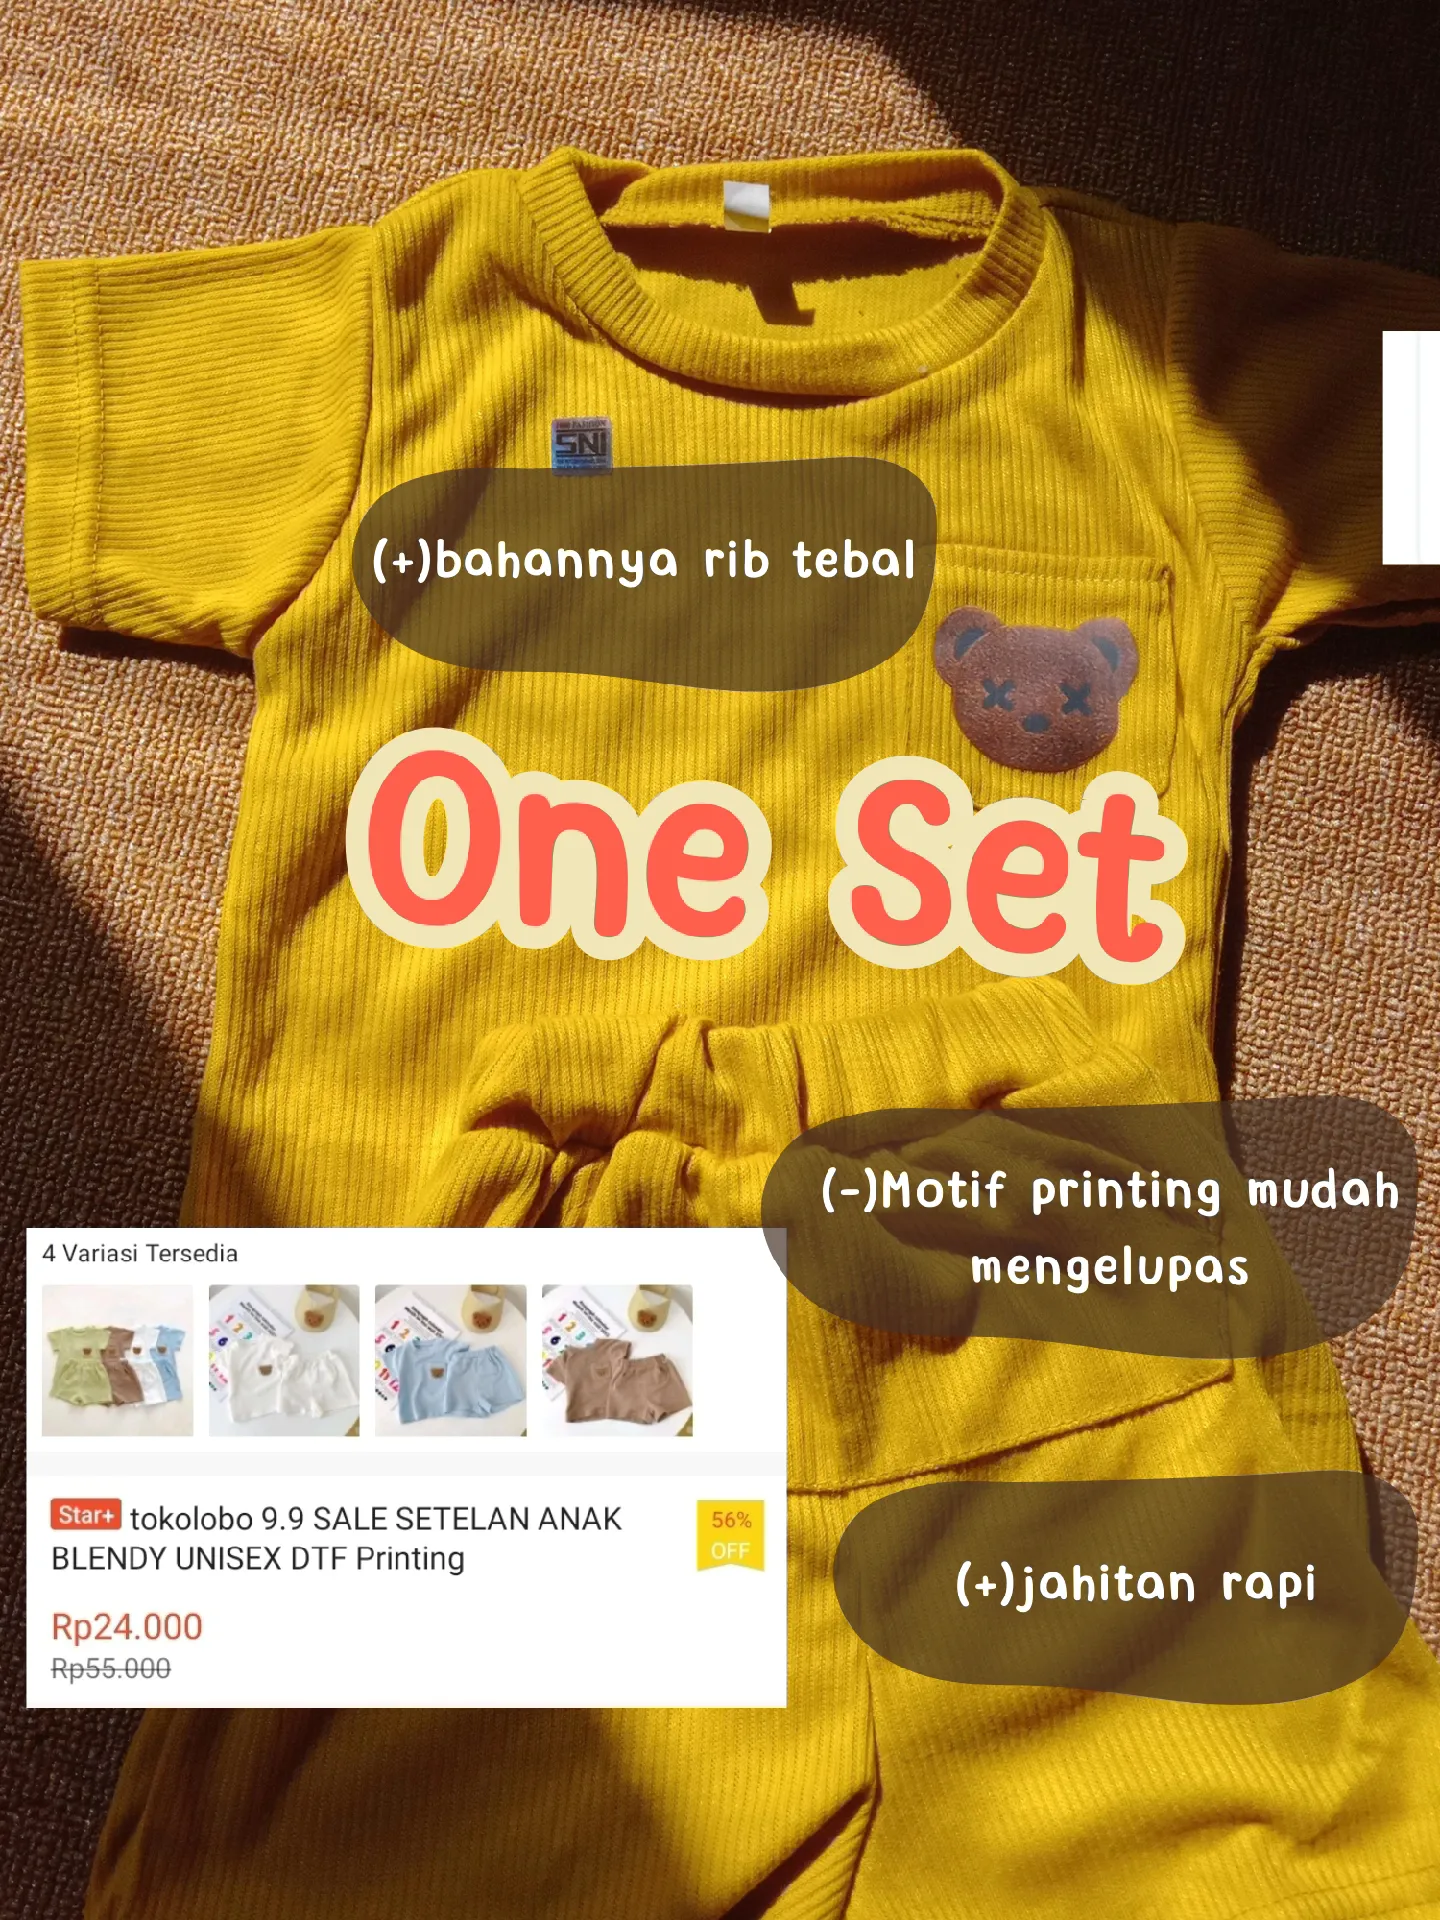 rekomendasi baju anak baby - Pencarian Lemon8